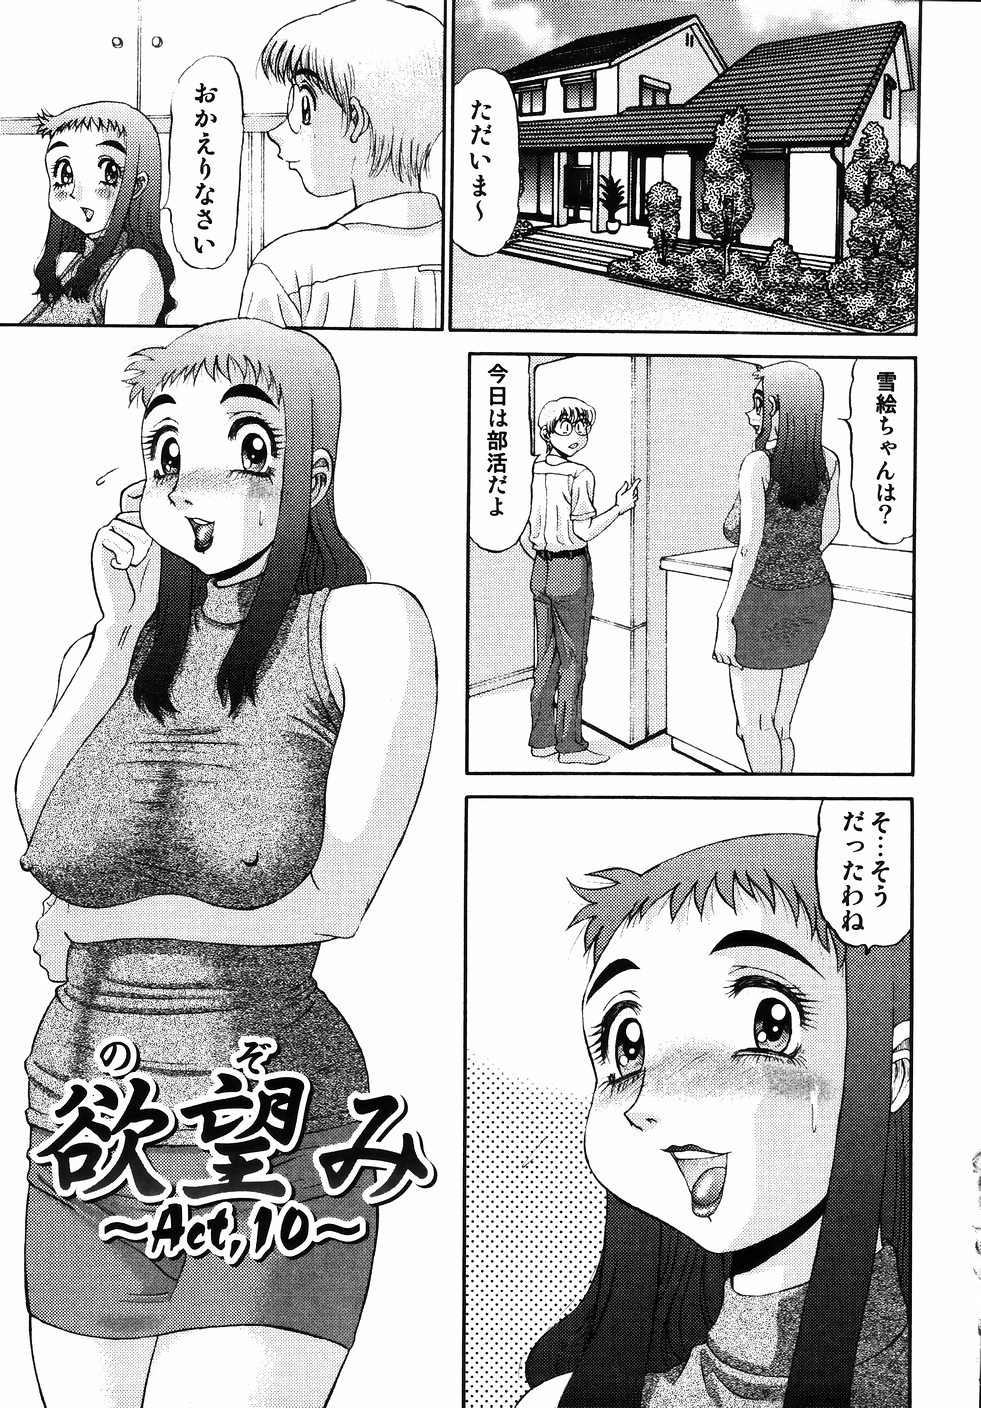 [PJ-1] Nozomi 2 page 41 full